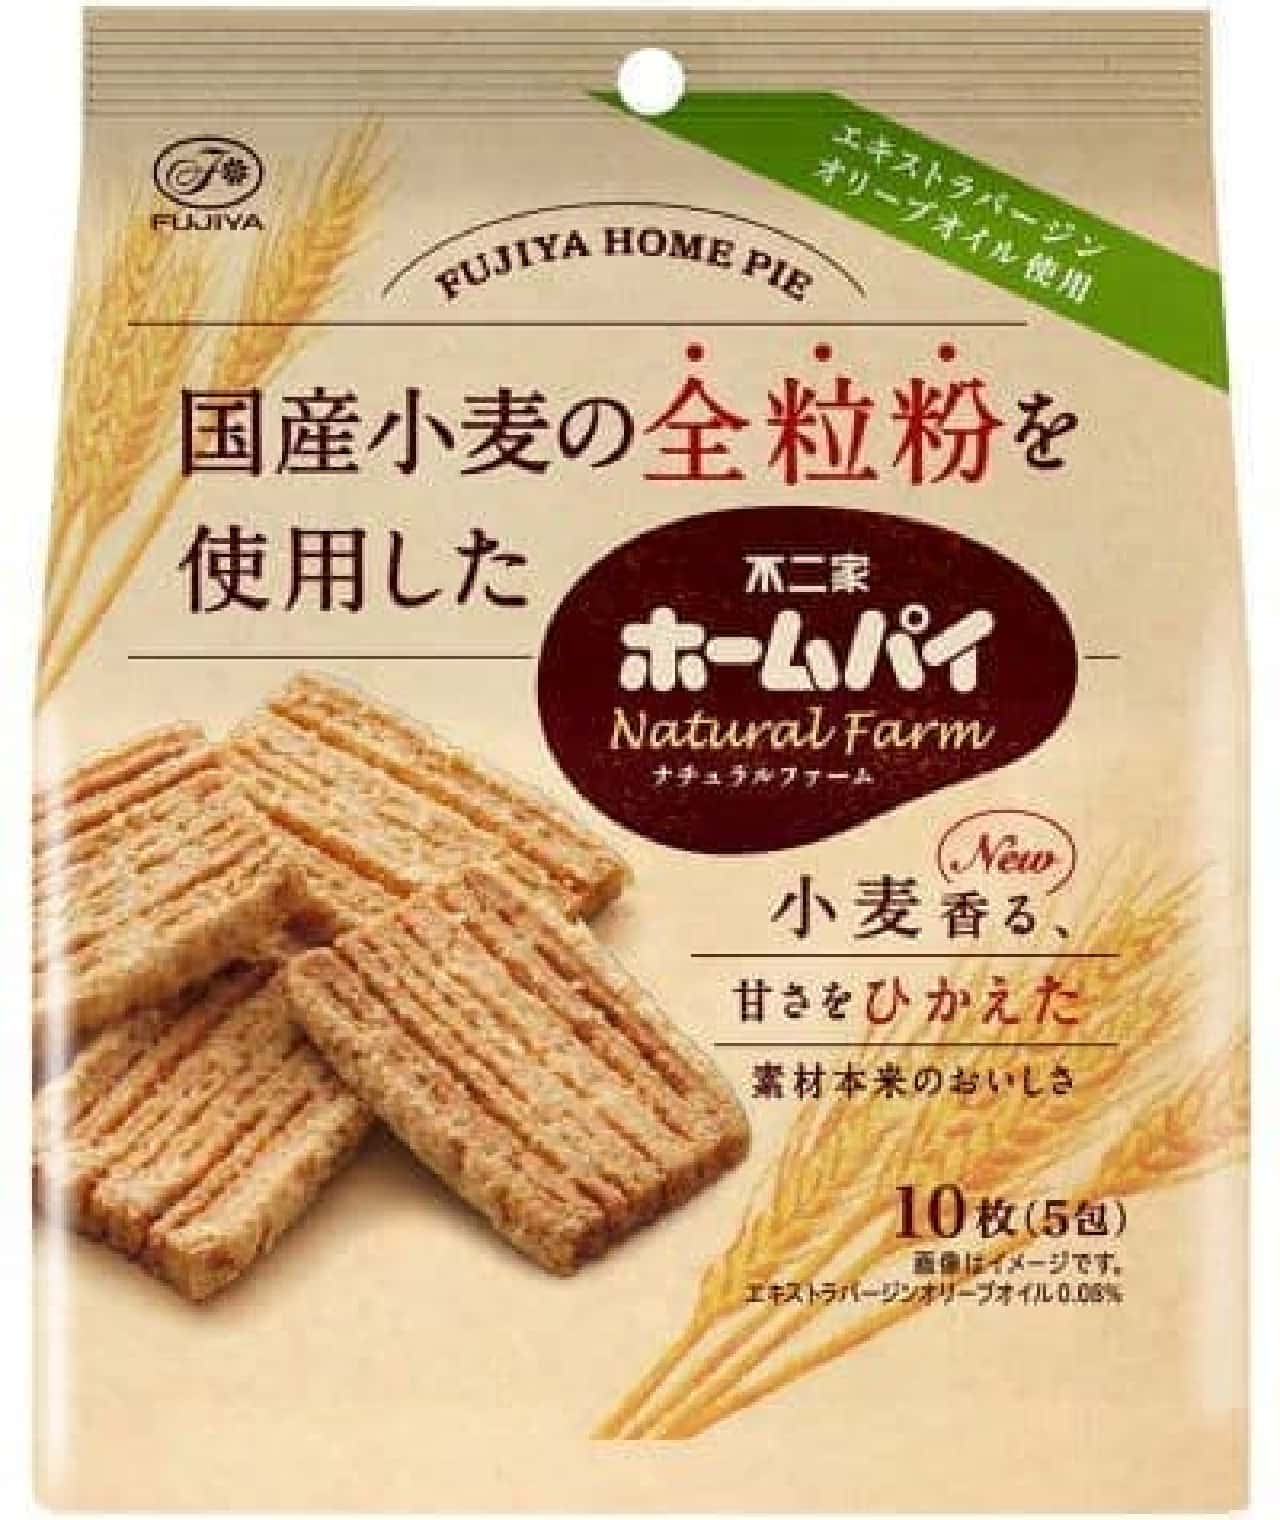 Fujiya "Home Pie Natural Farm (whole grain)"